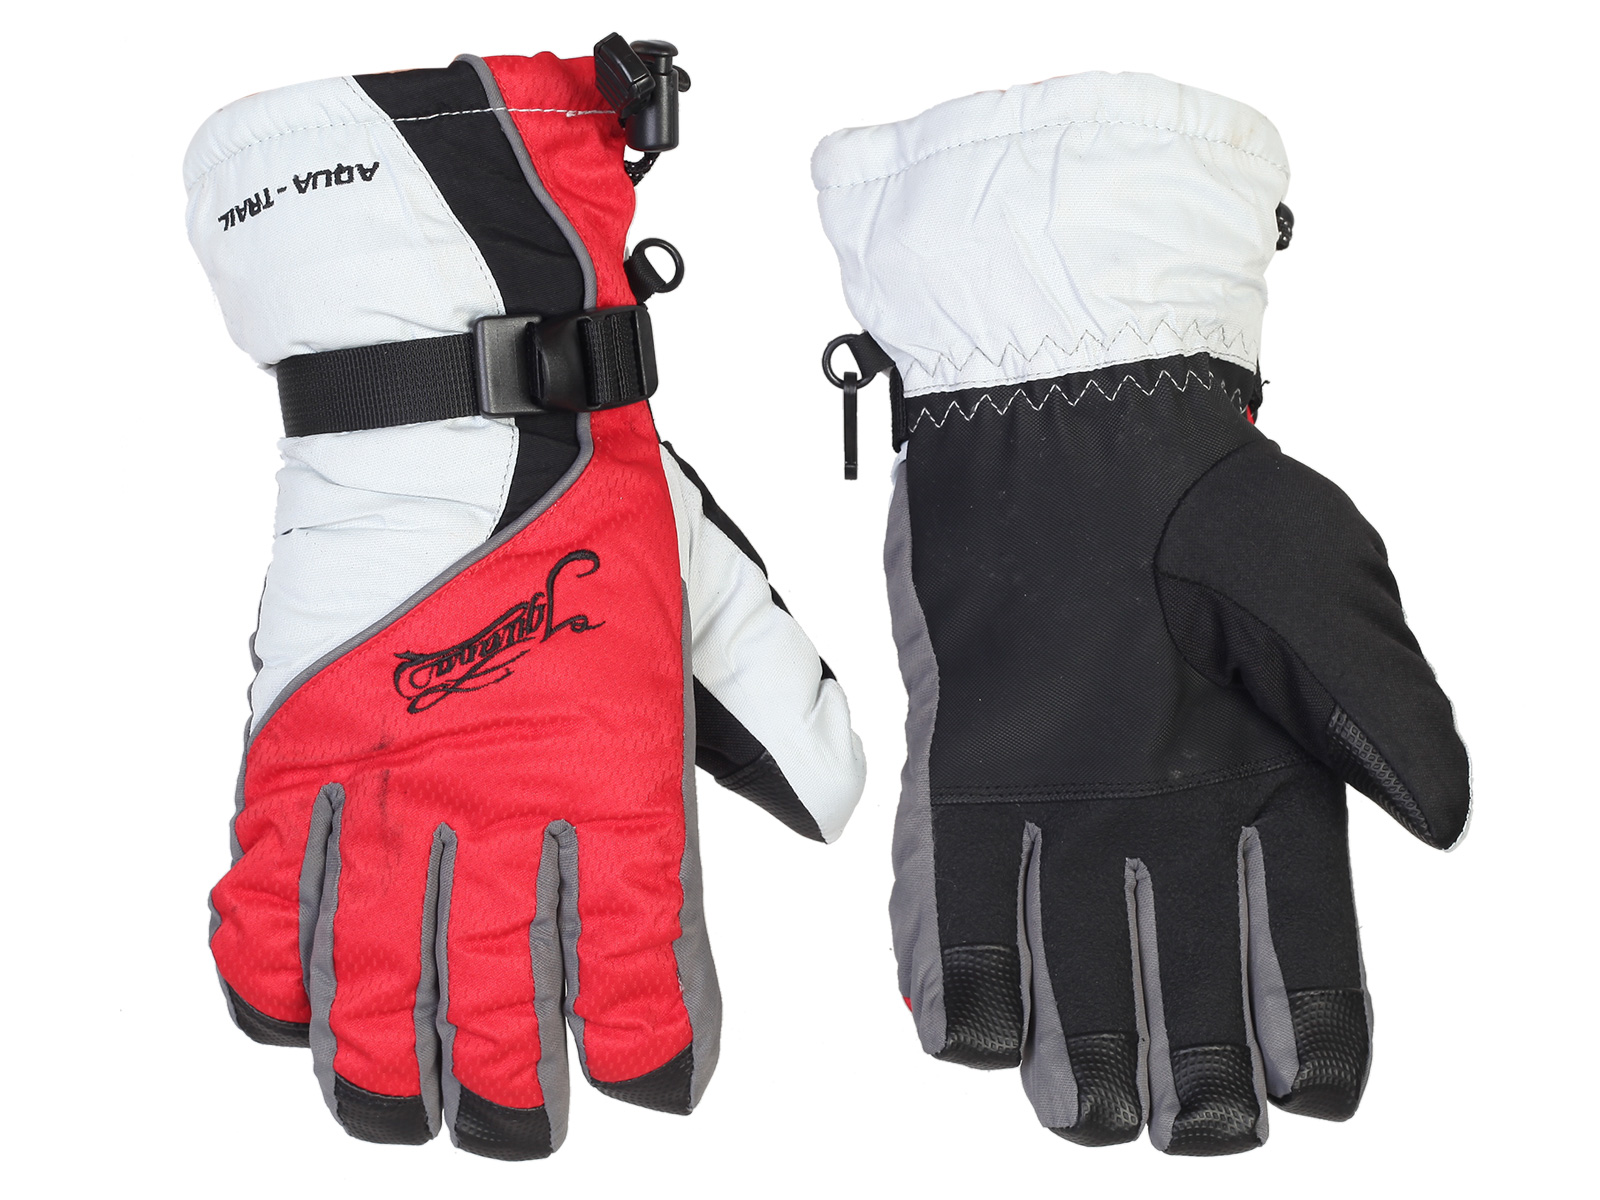 Зимние перчатки Aqua-Trail – защита, отведение влаги, сохранение тепла и сухости рук №68